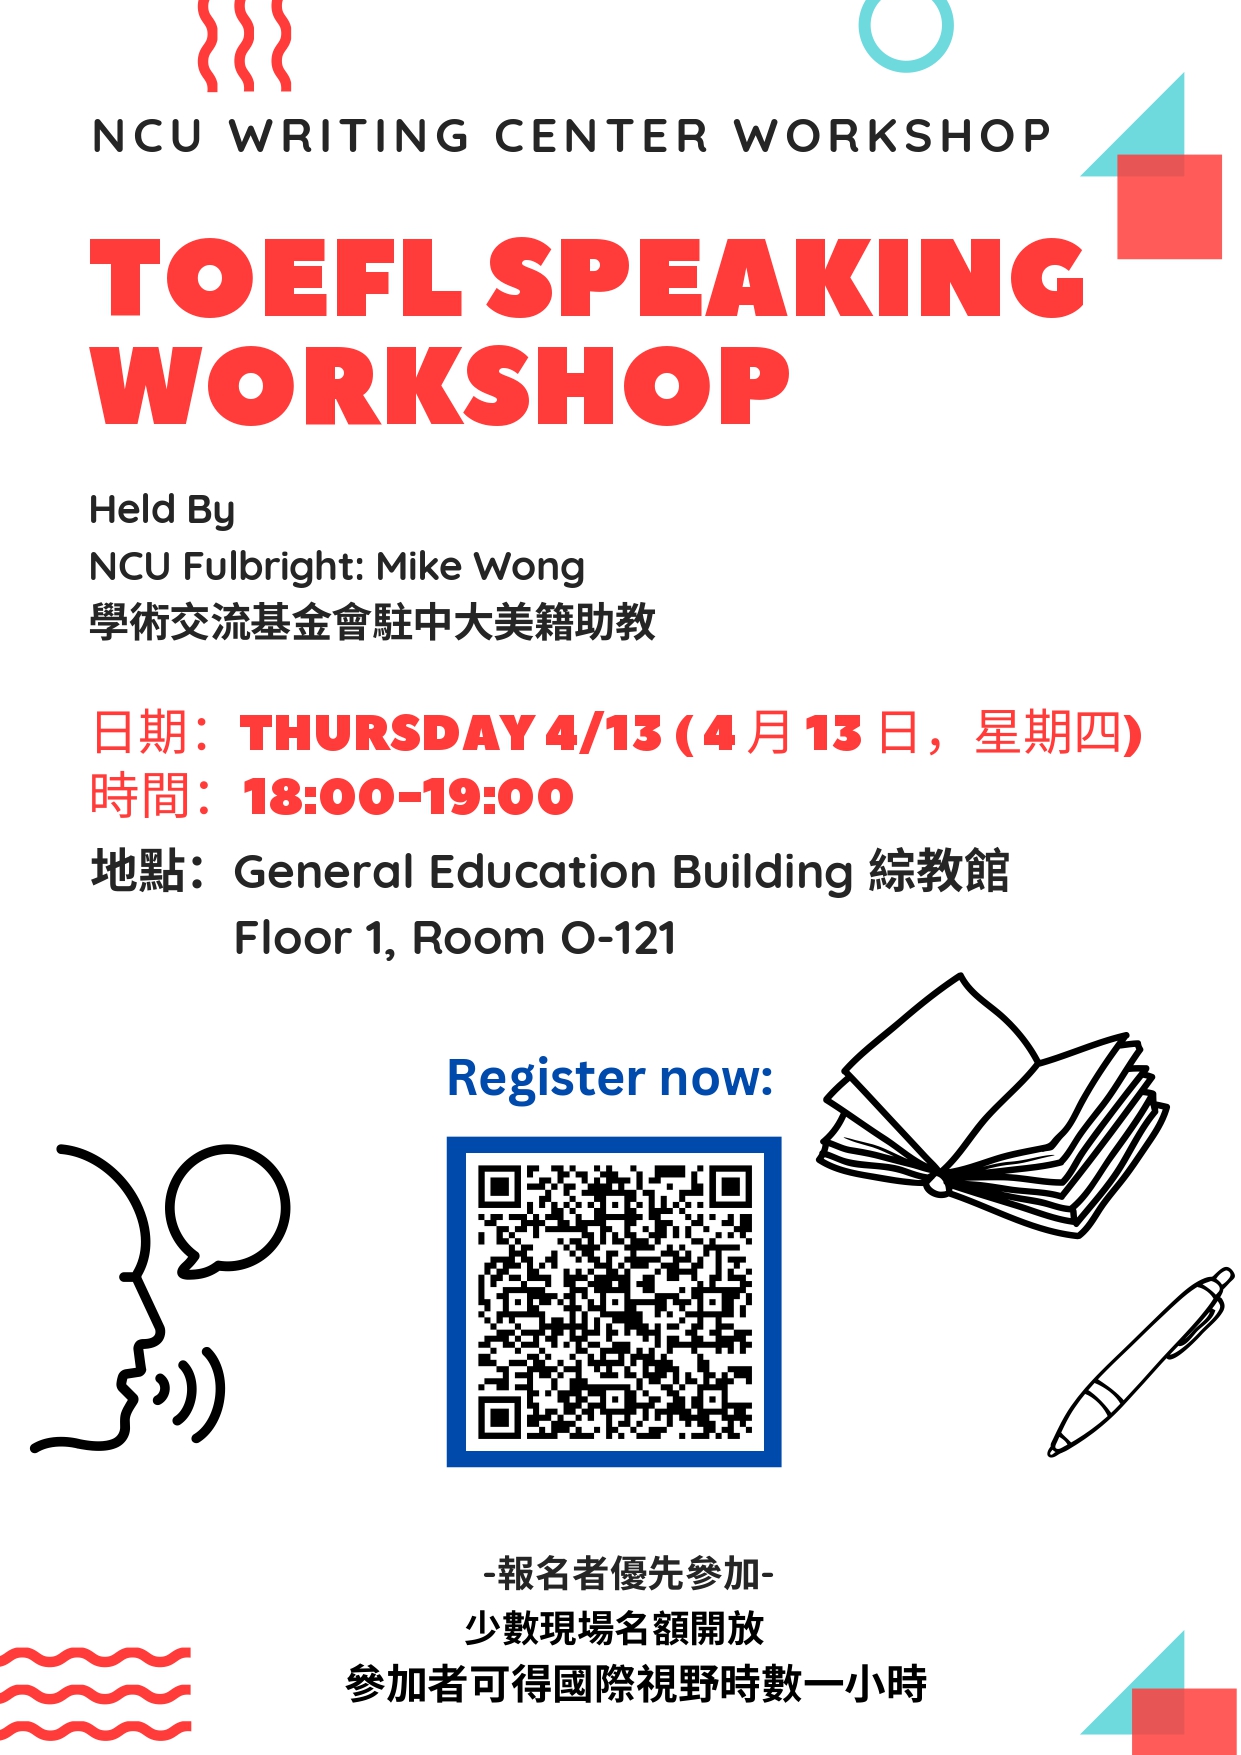 111-2 Semester Writing Workshop 3 - TOEFL Speaking Workshop